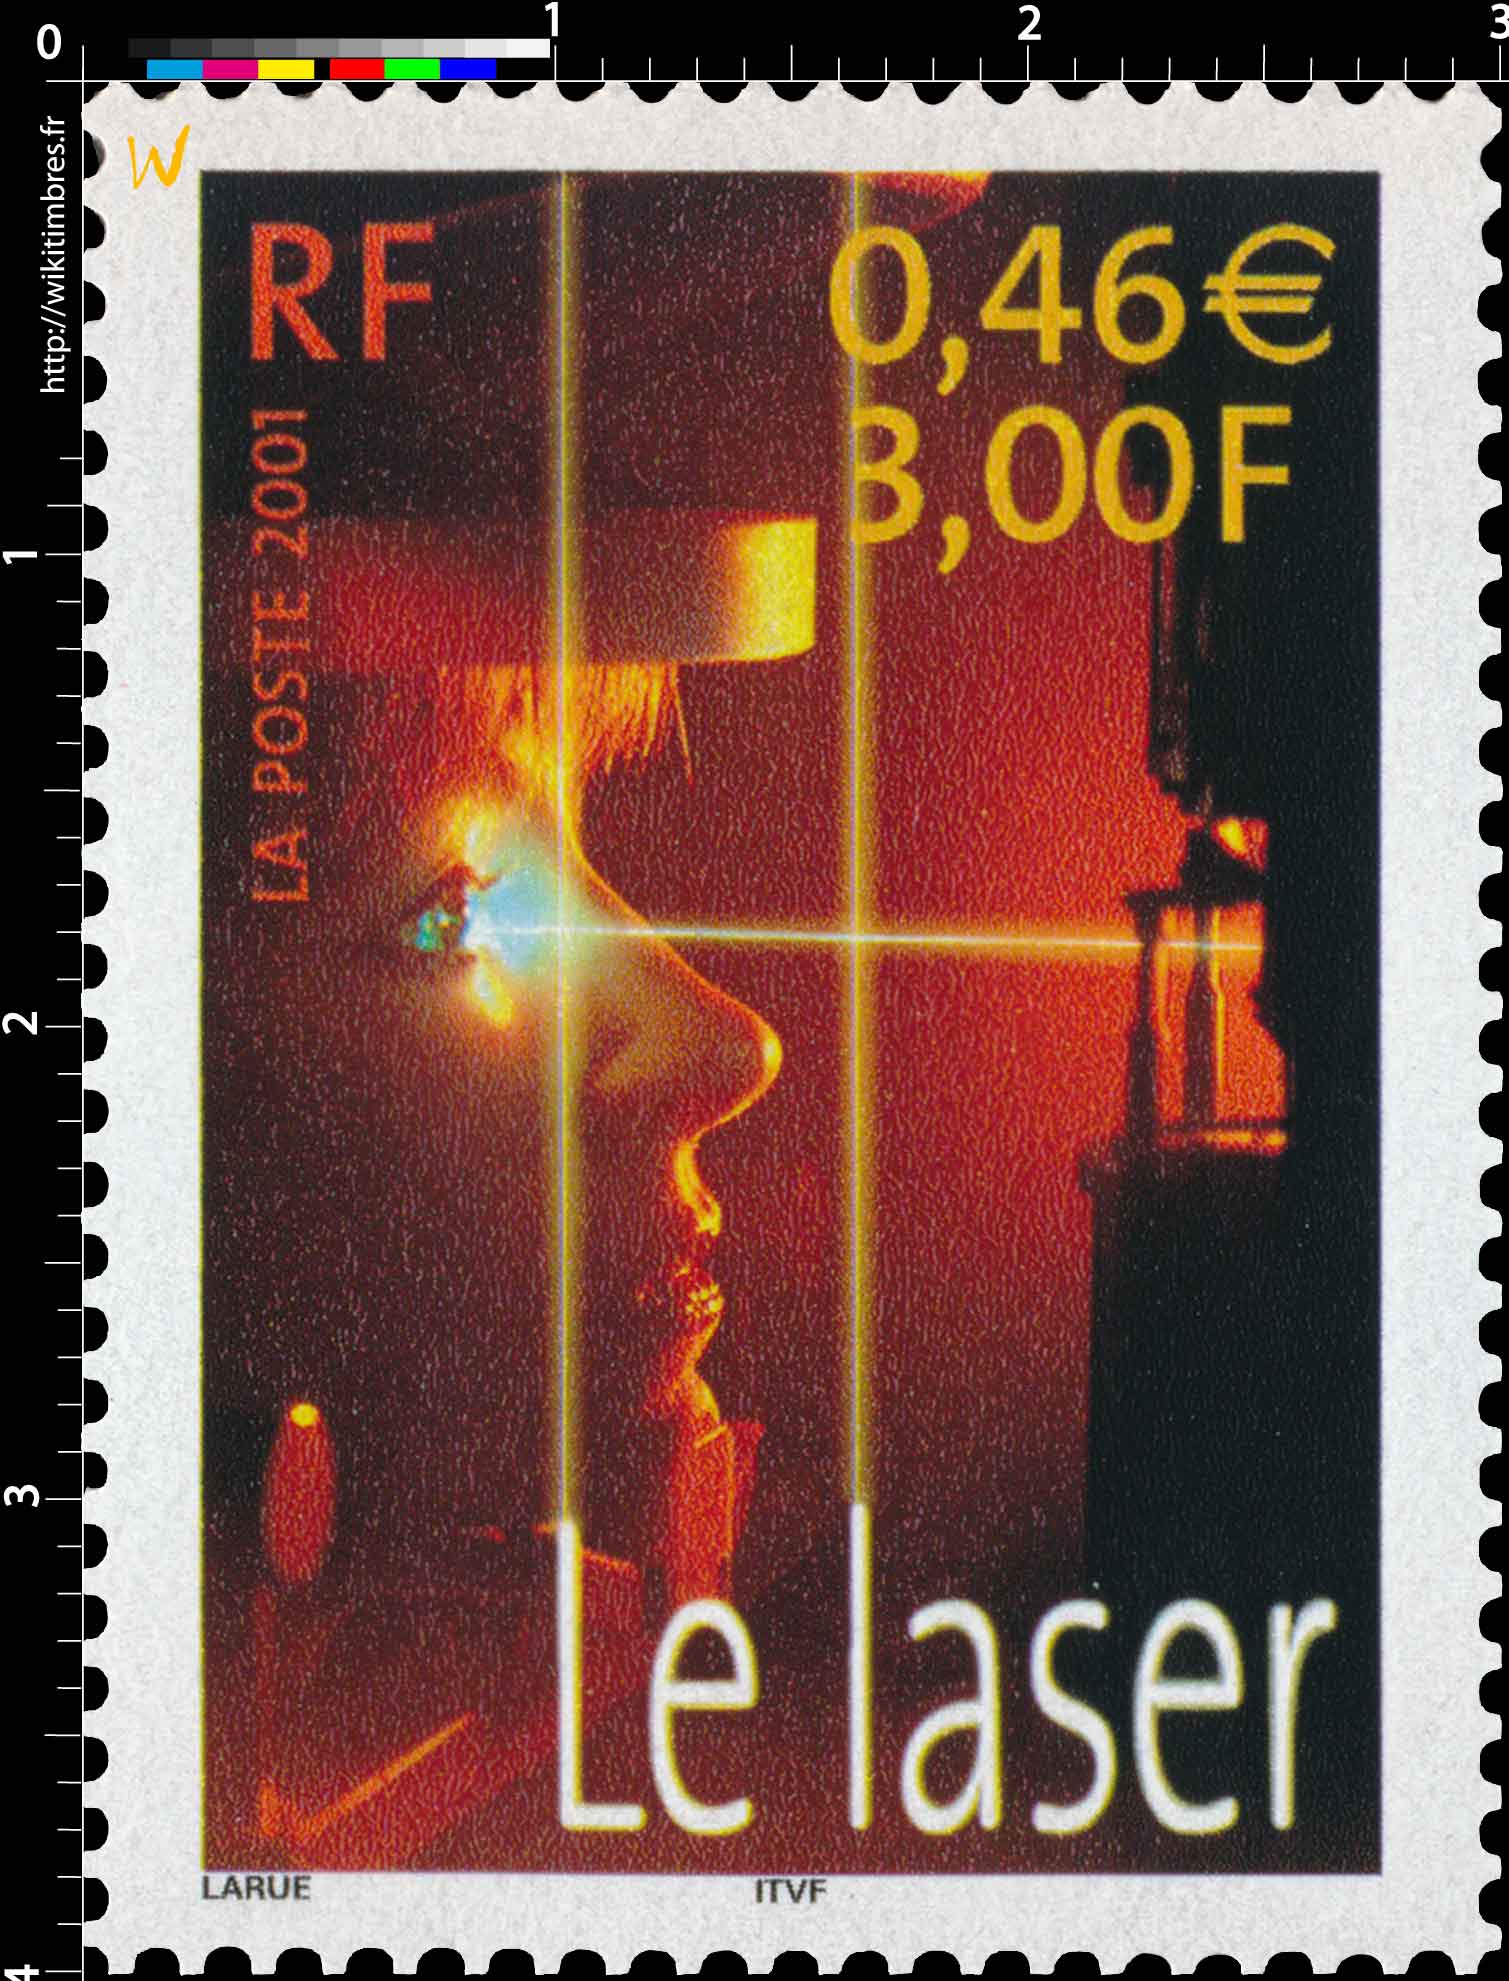 2001 Le laser